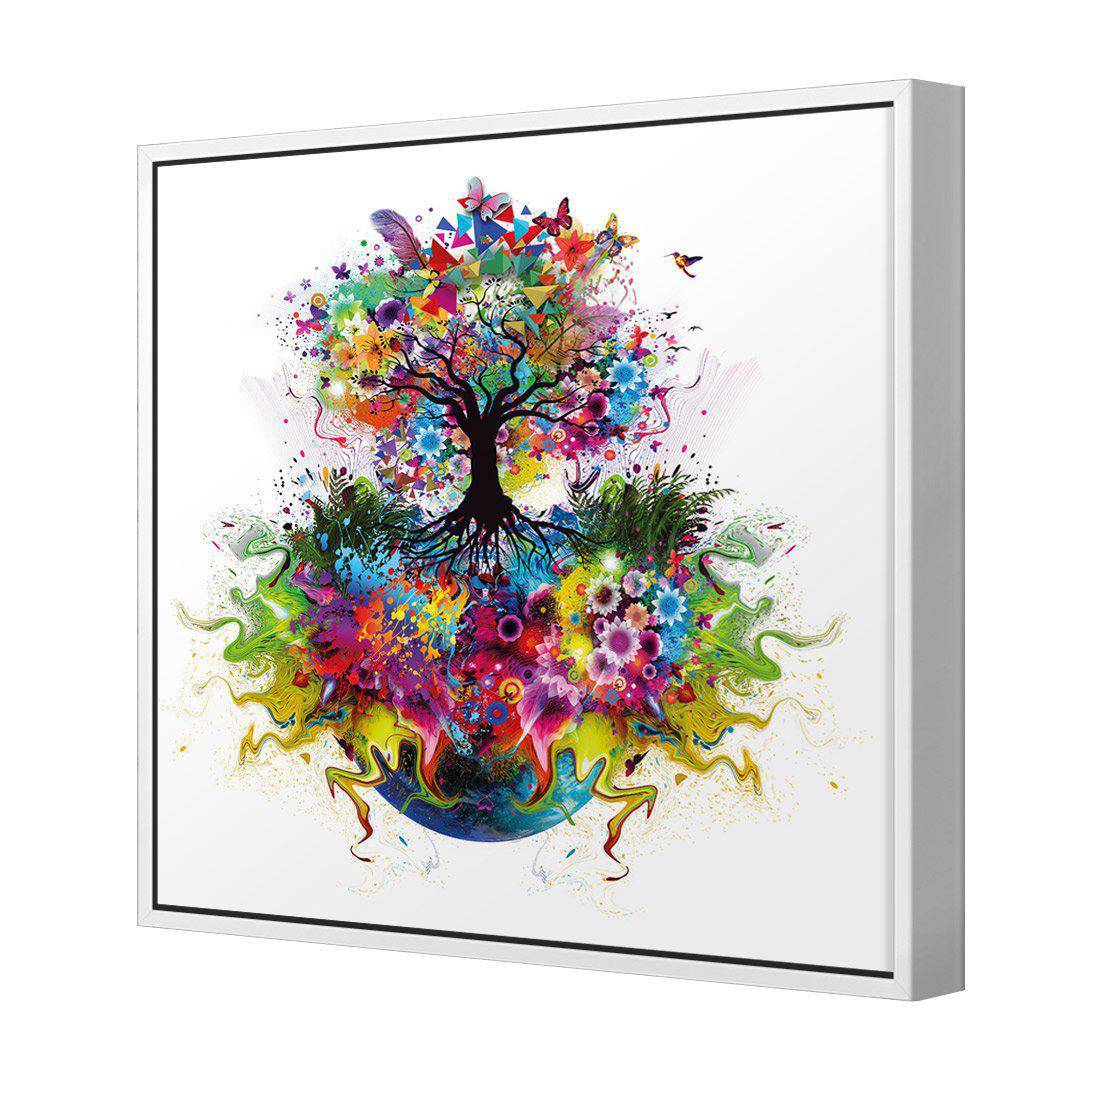 Flower Power Canvas Art-Canvas-Wall Art Designs-30x30cm-Canvas - White Frame-Wall Art Designs